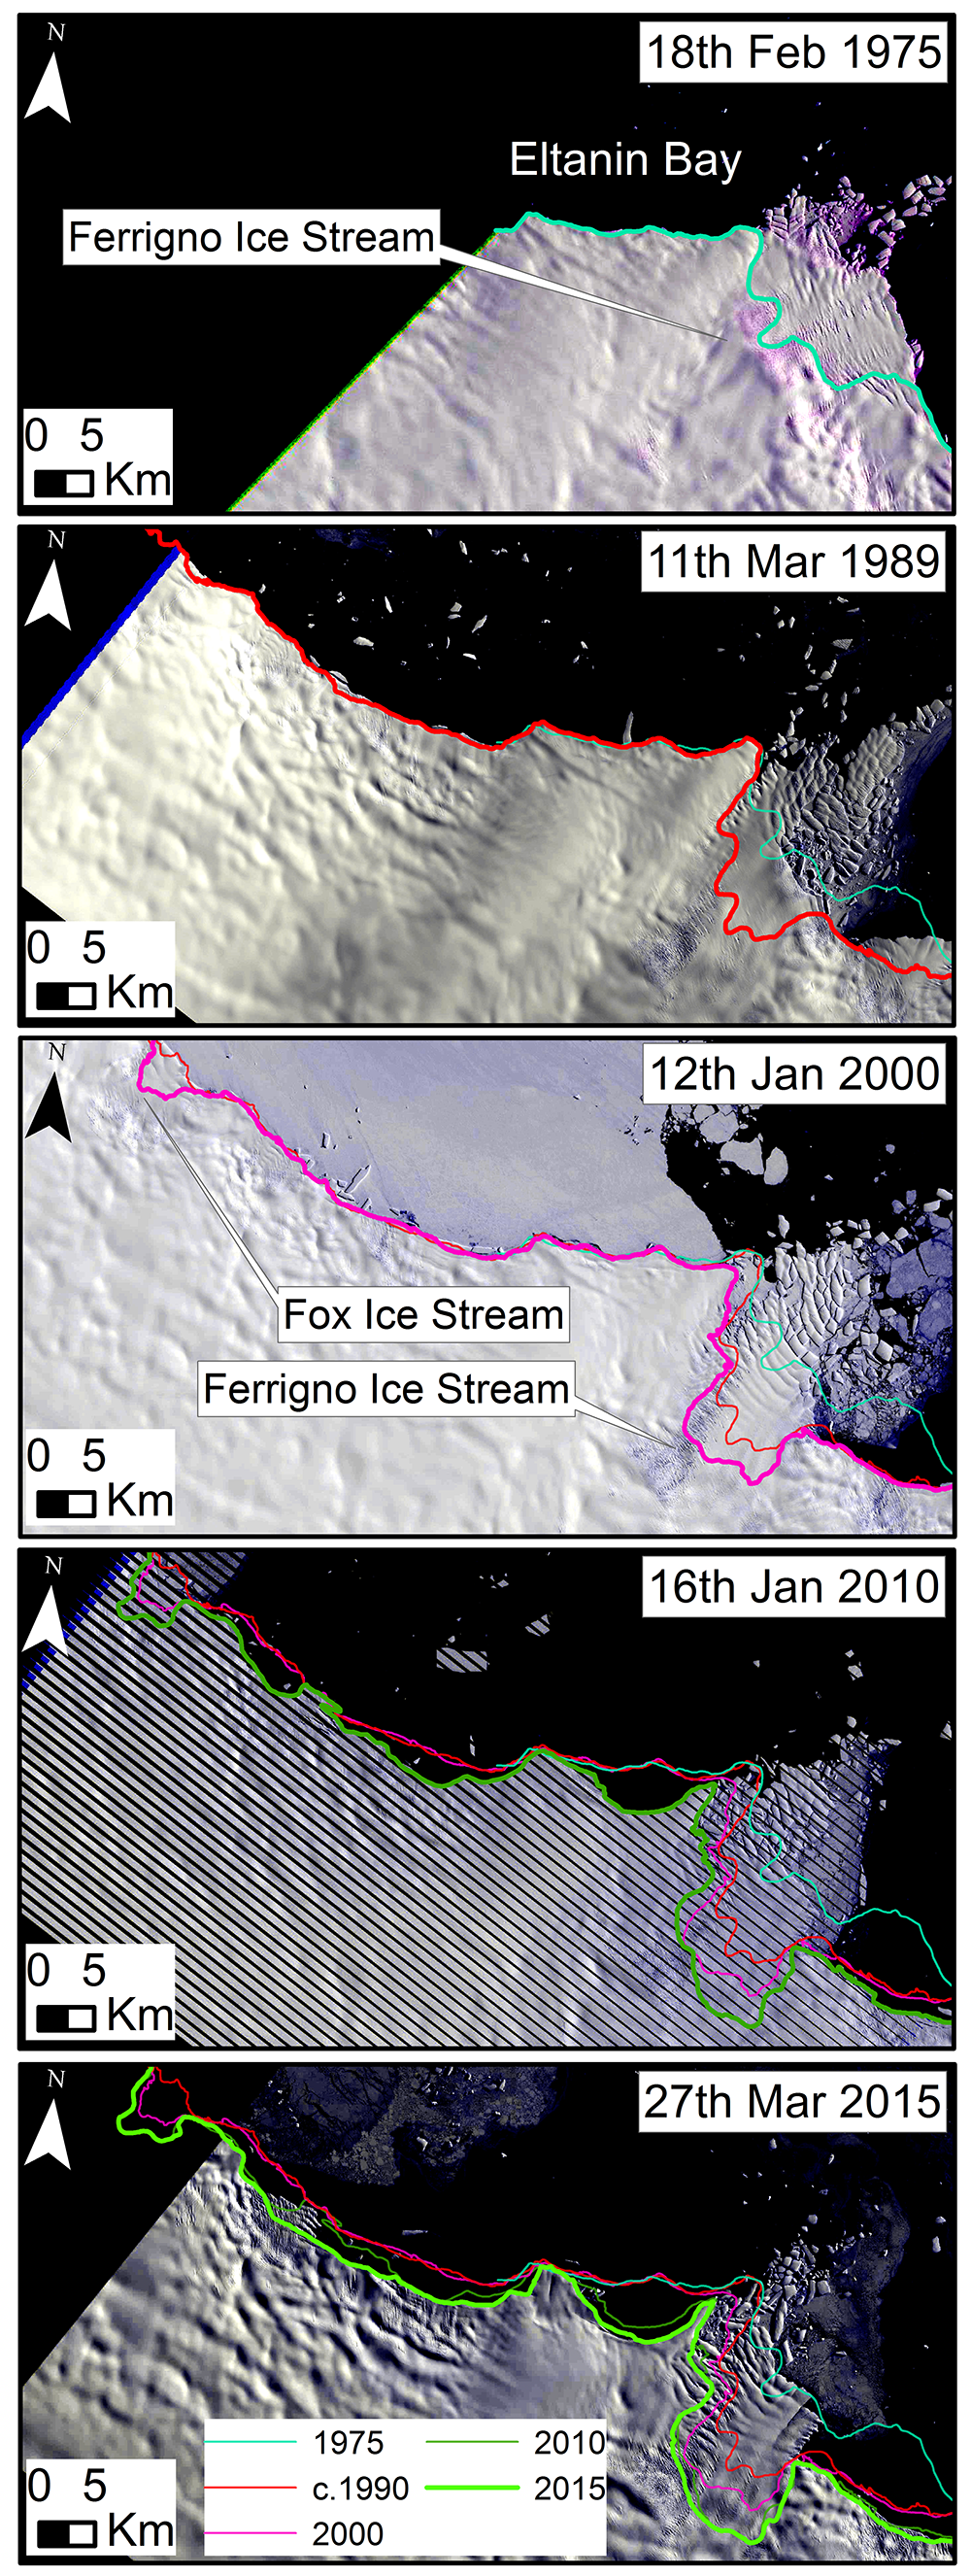 Ferrigno Ice Stream